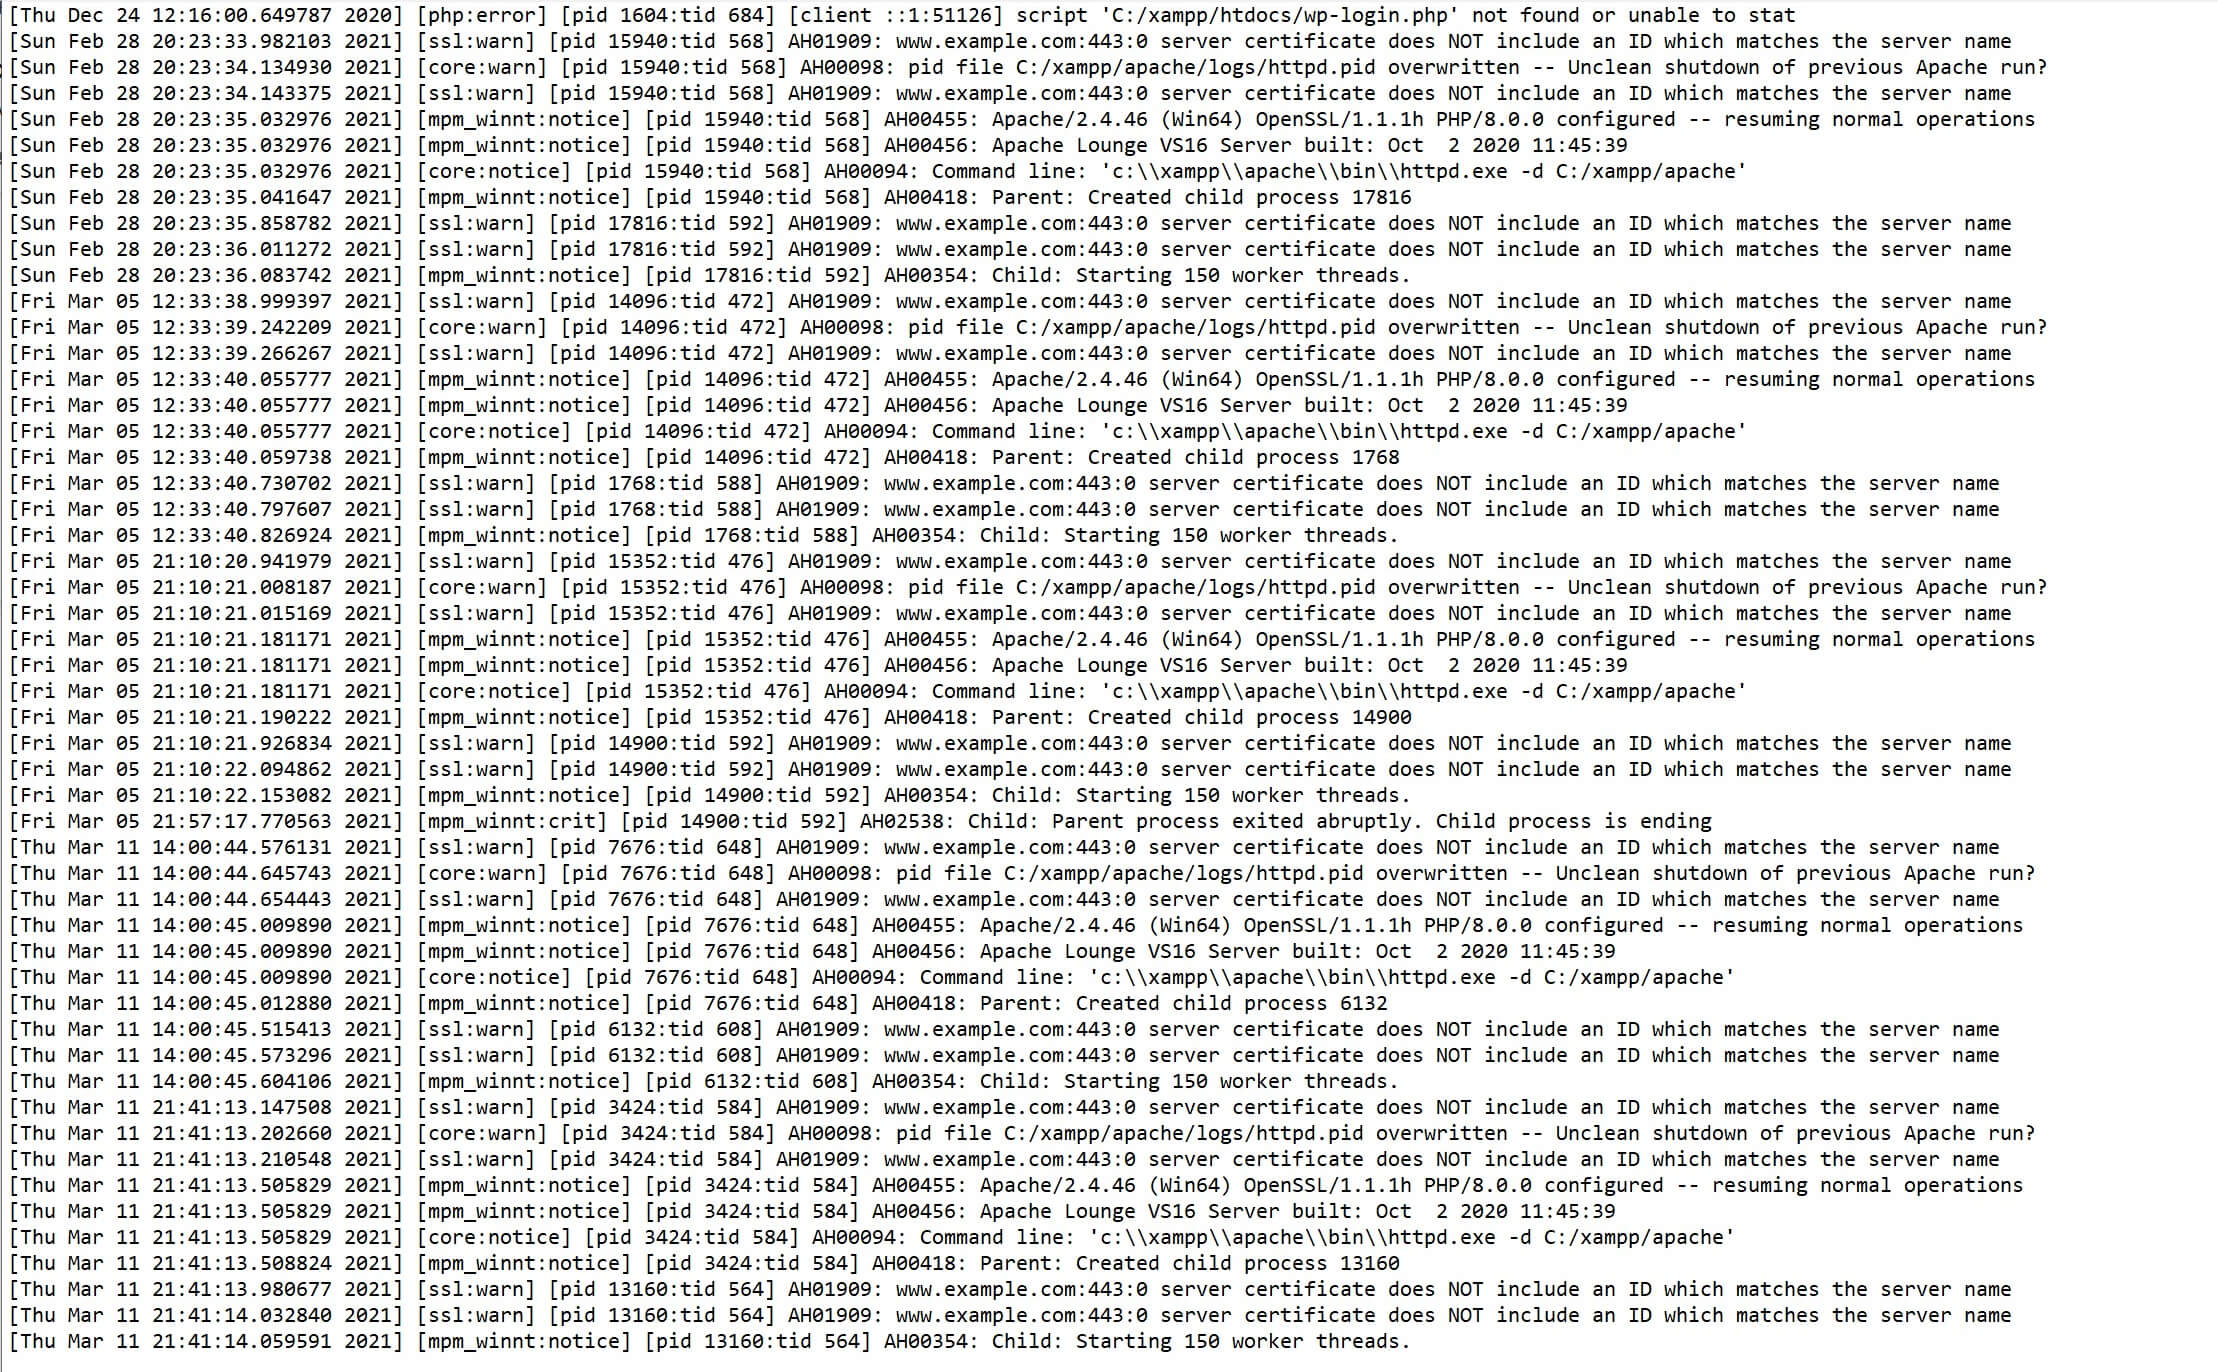 O log de erros do XAMPP organizado em ordem cronológica.